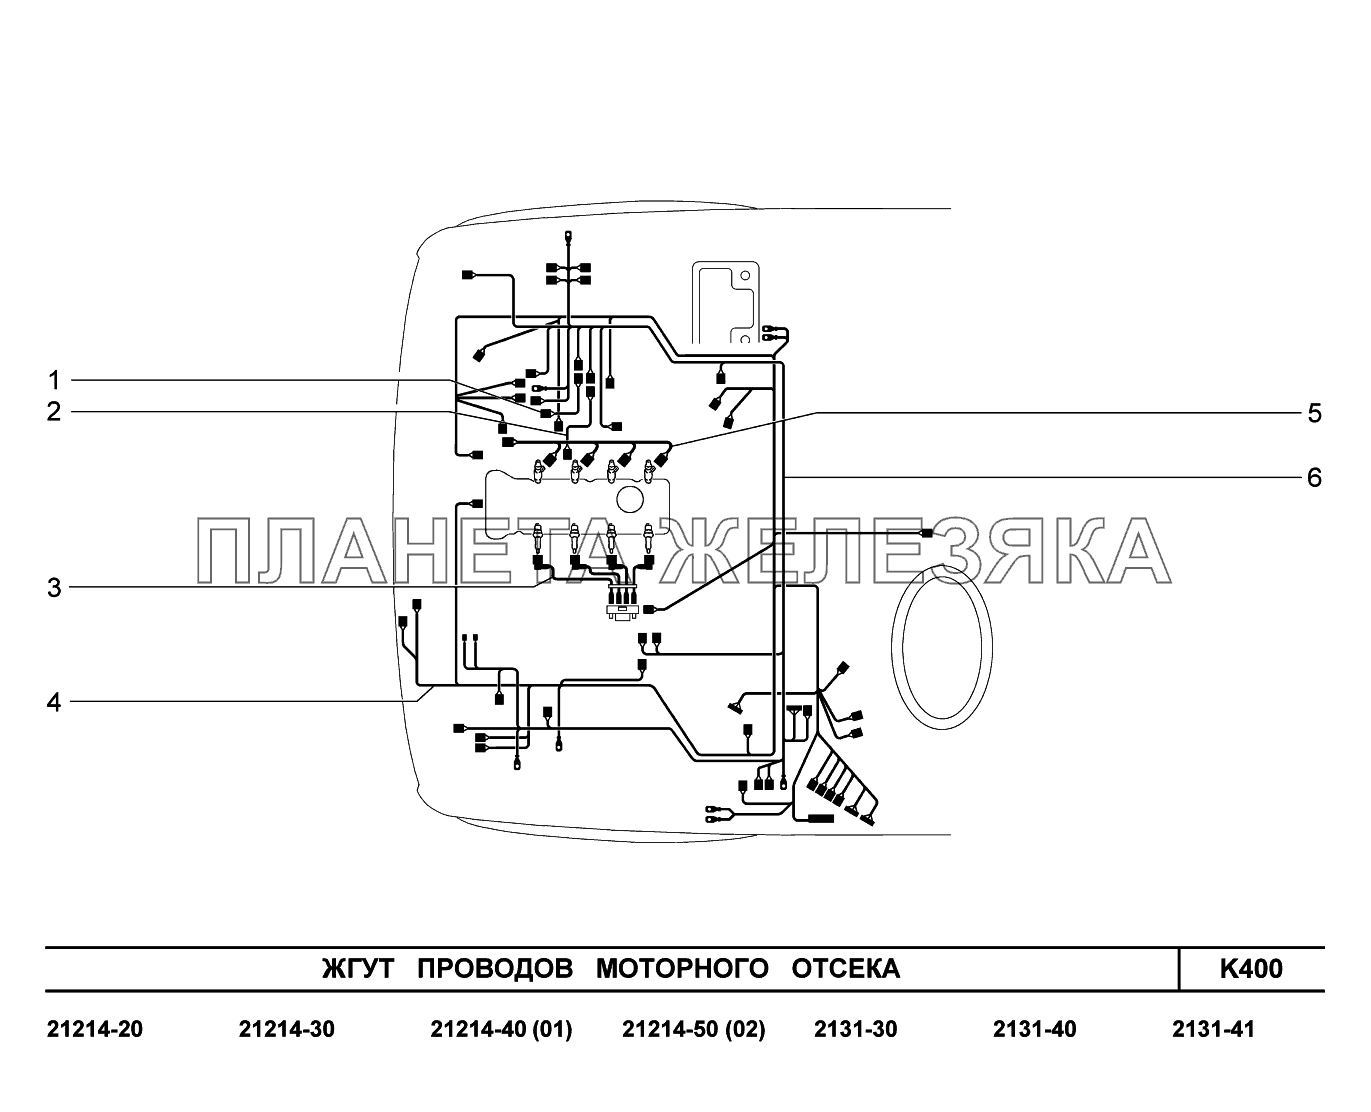 K400. Жгуты проводов моторного отсека LADA 4x4